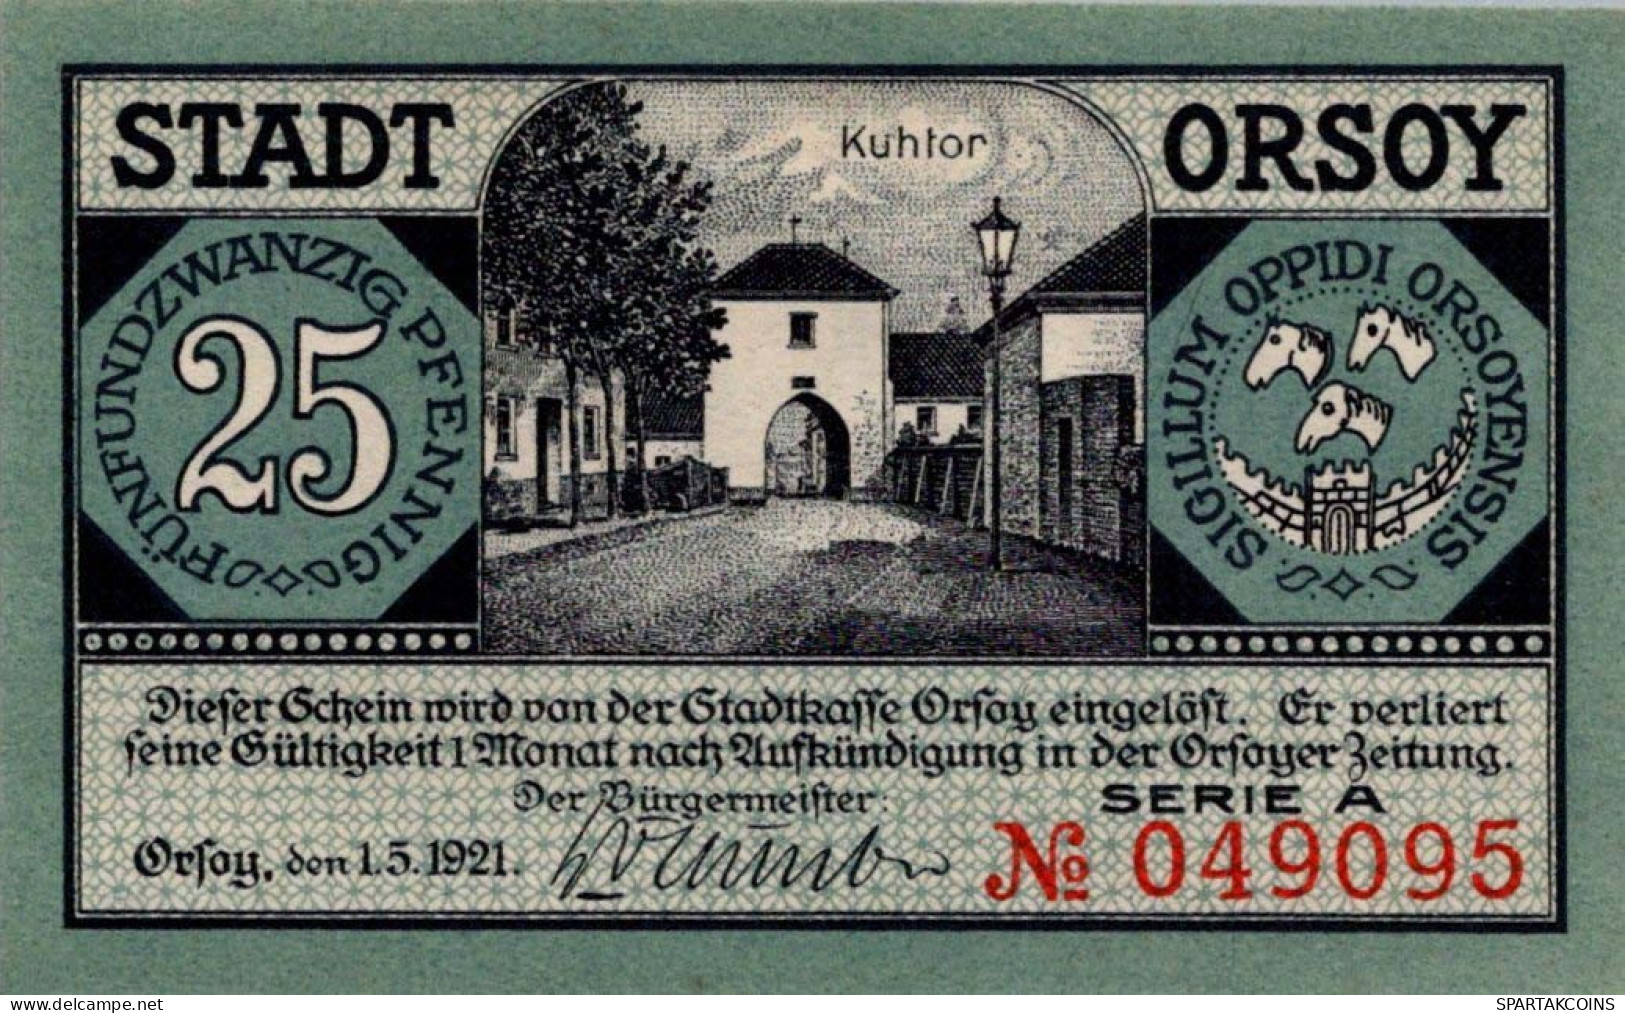 25 PFENNIG 1921 Stadt ORSOY Rhine UNC DEUTSCHLAND Notgeld Banknote #PI849 - [11] Emissions Locales